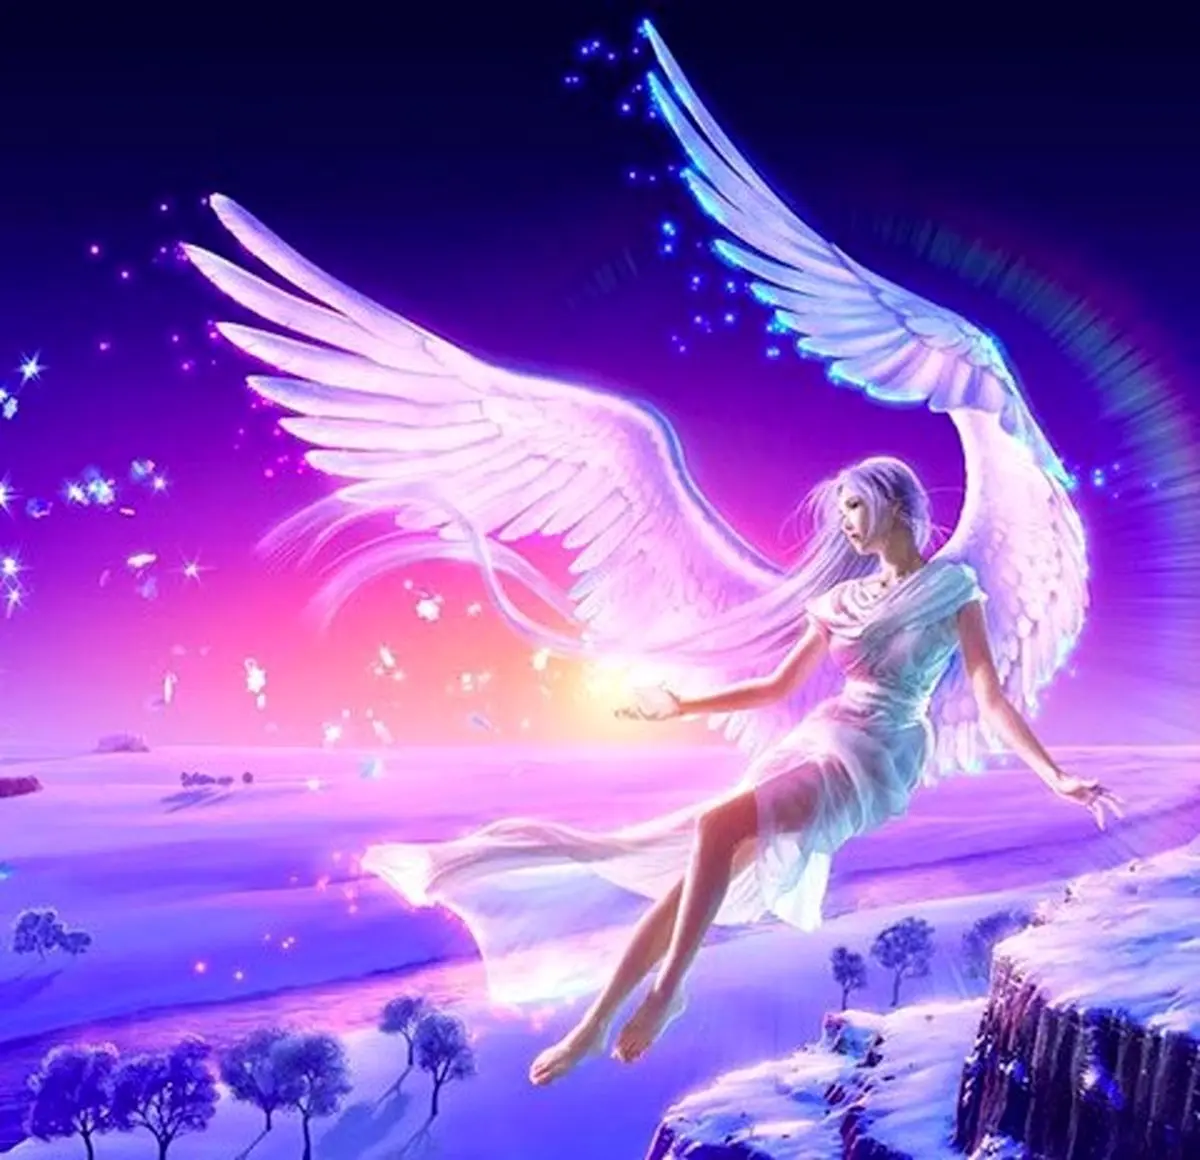 فال فرشتگان 23 آبان ماه | فرشتگان برای شما چه پیام مثبتی دارند؟